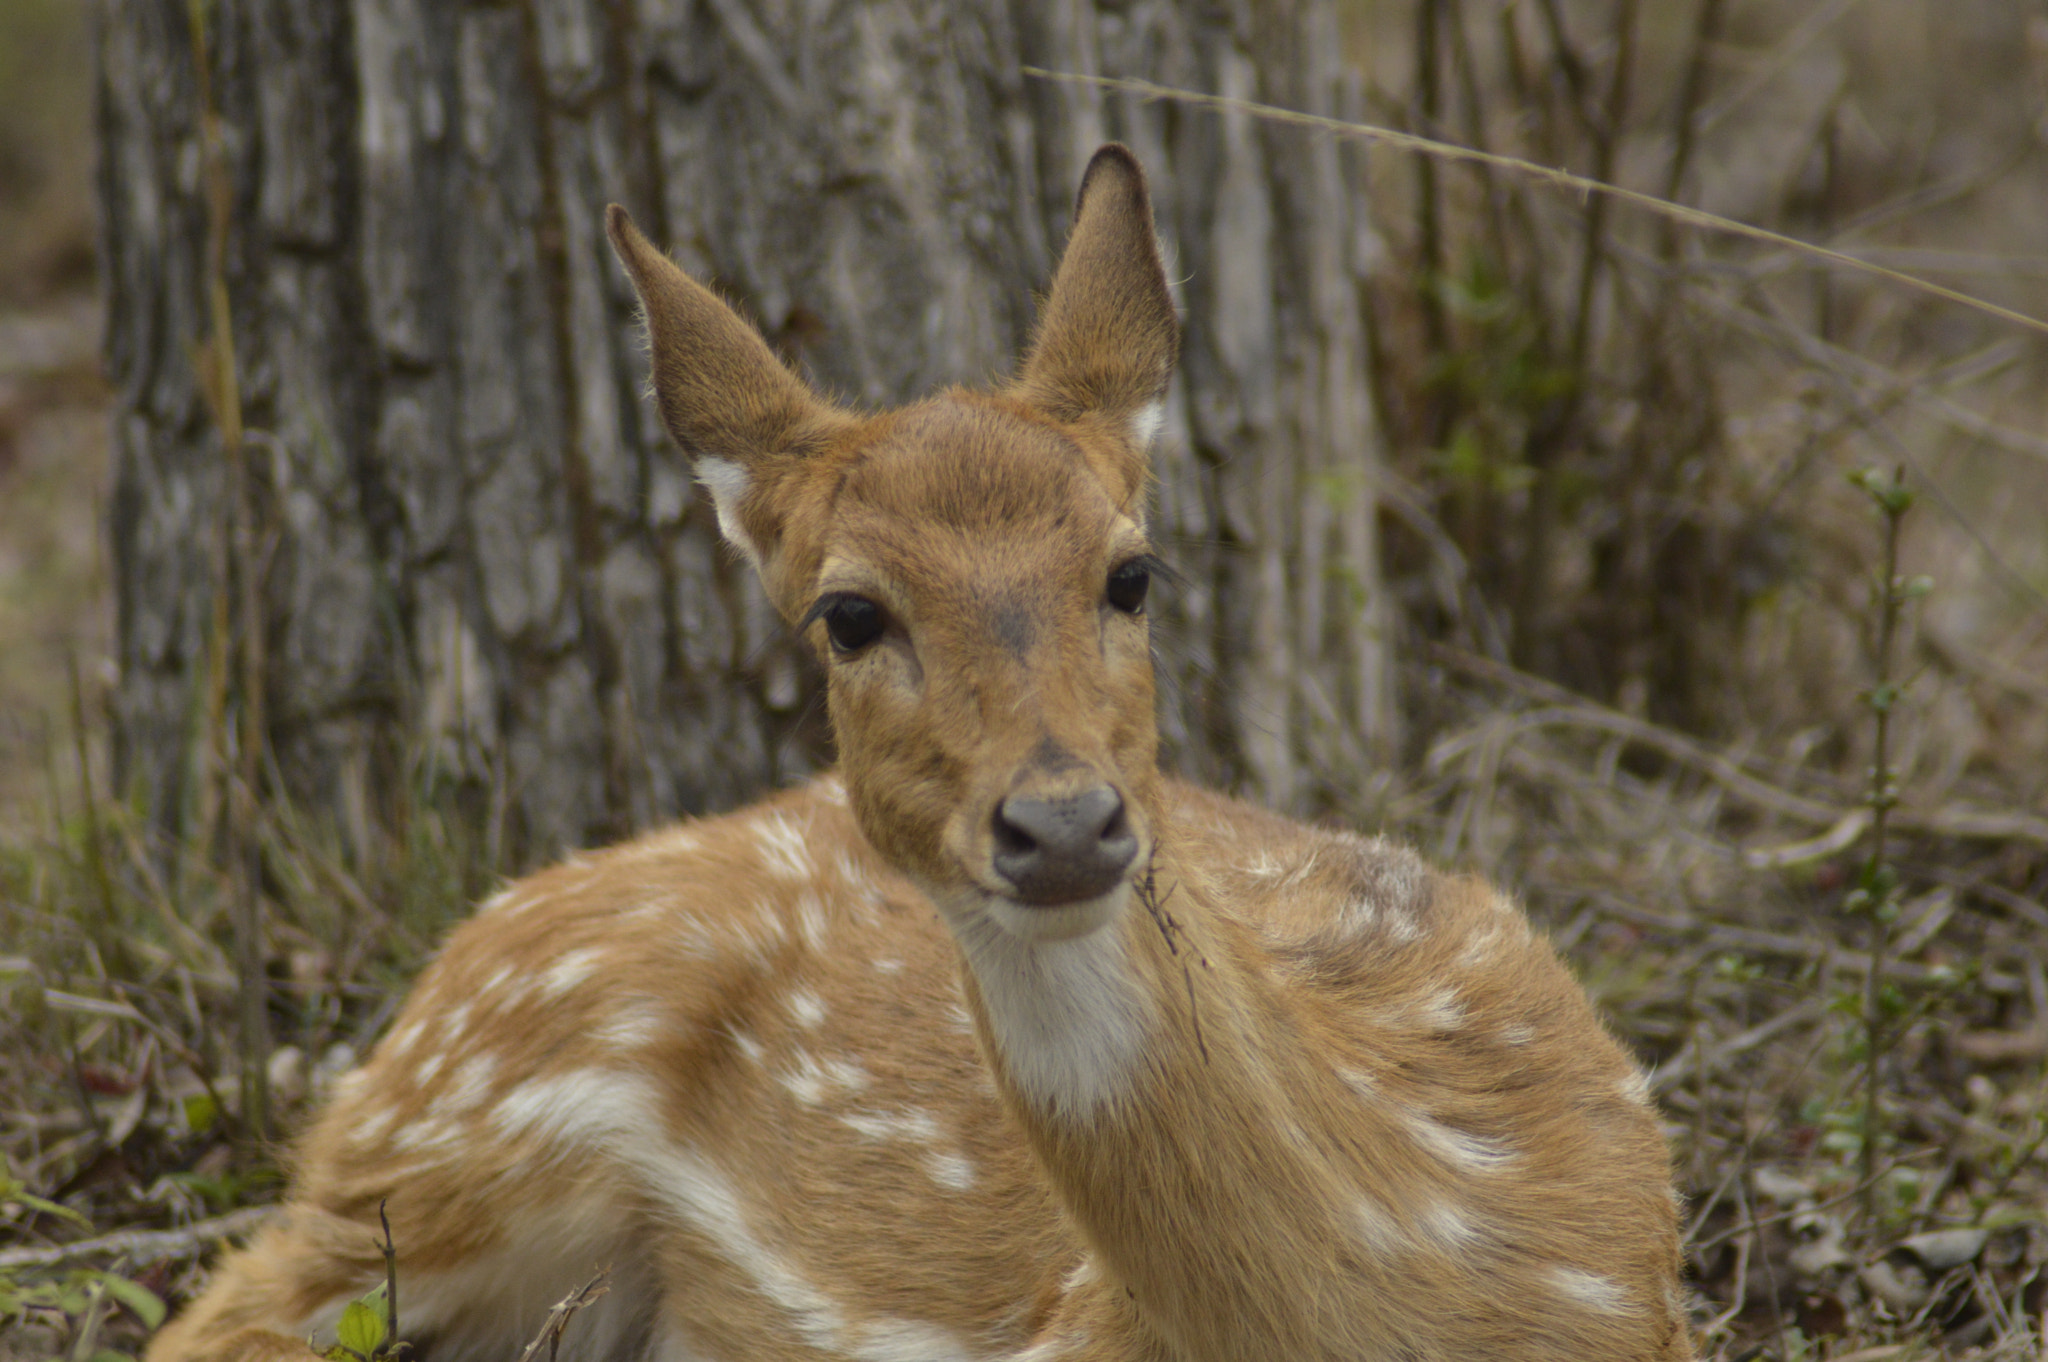 Tamron AF 200-400mm f/5.6 LD IF (75D) sample photo. Deer photography